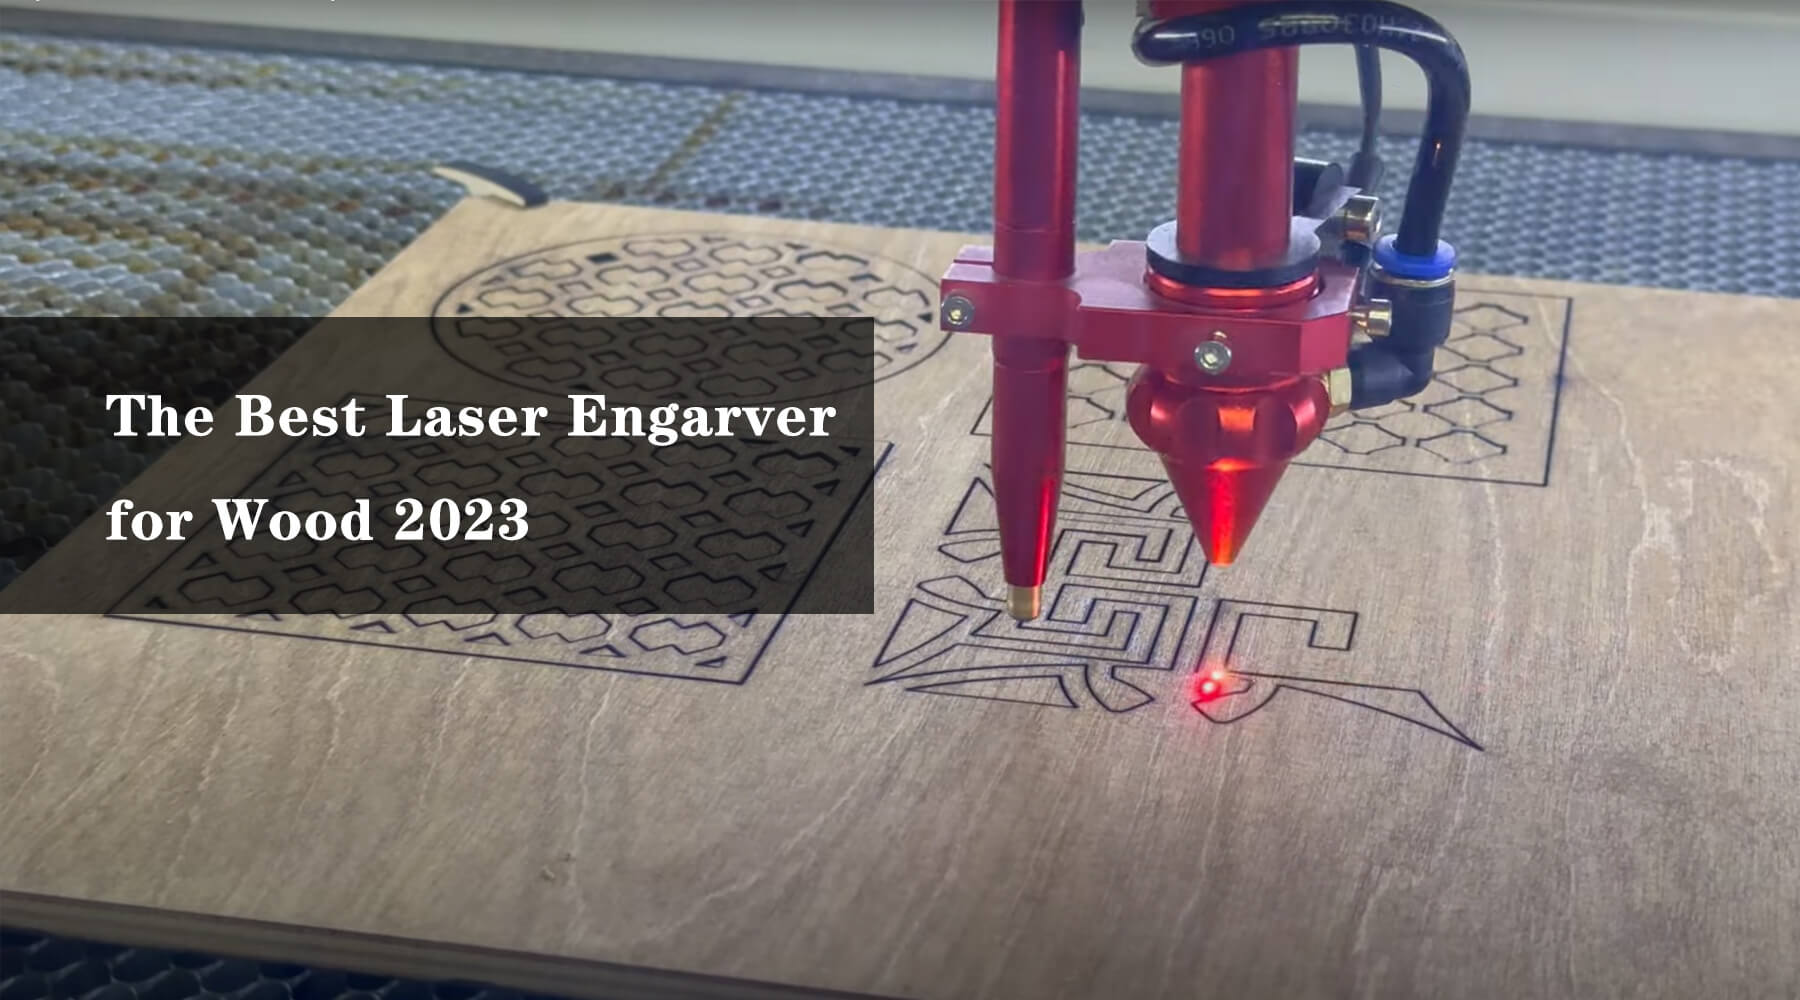  Best Laser Engarver for Wood